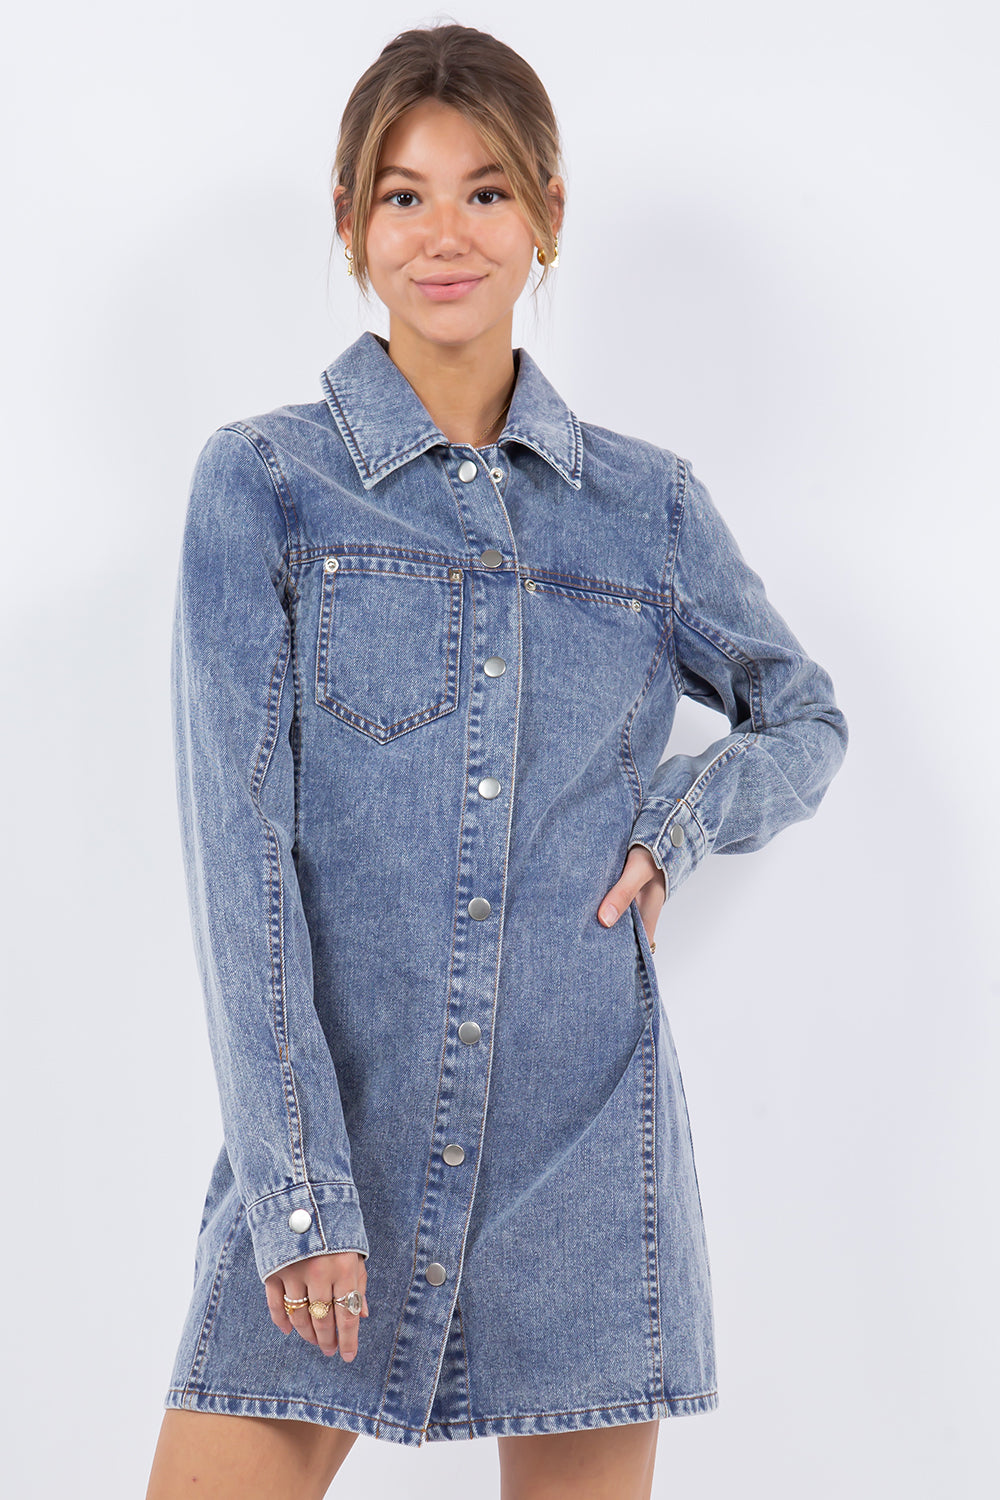 Urban Outfitter Woman Button-down Denim Mini Dress size 2 | eBay